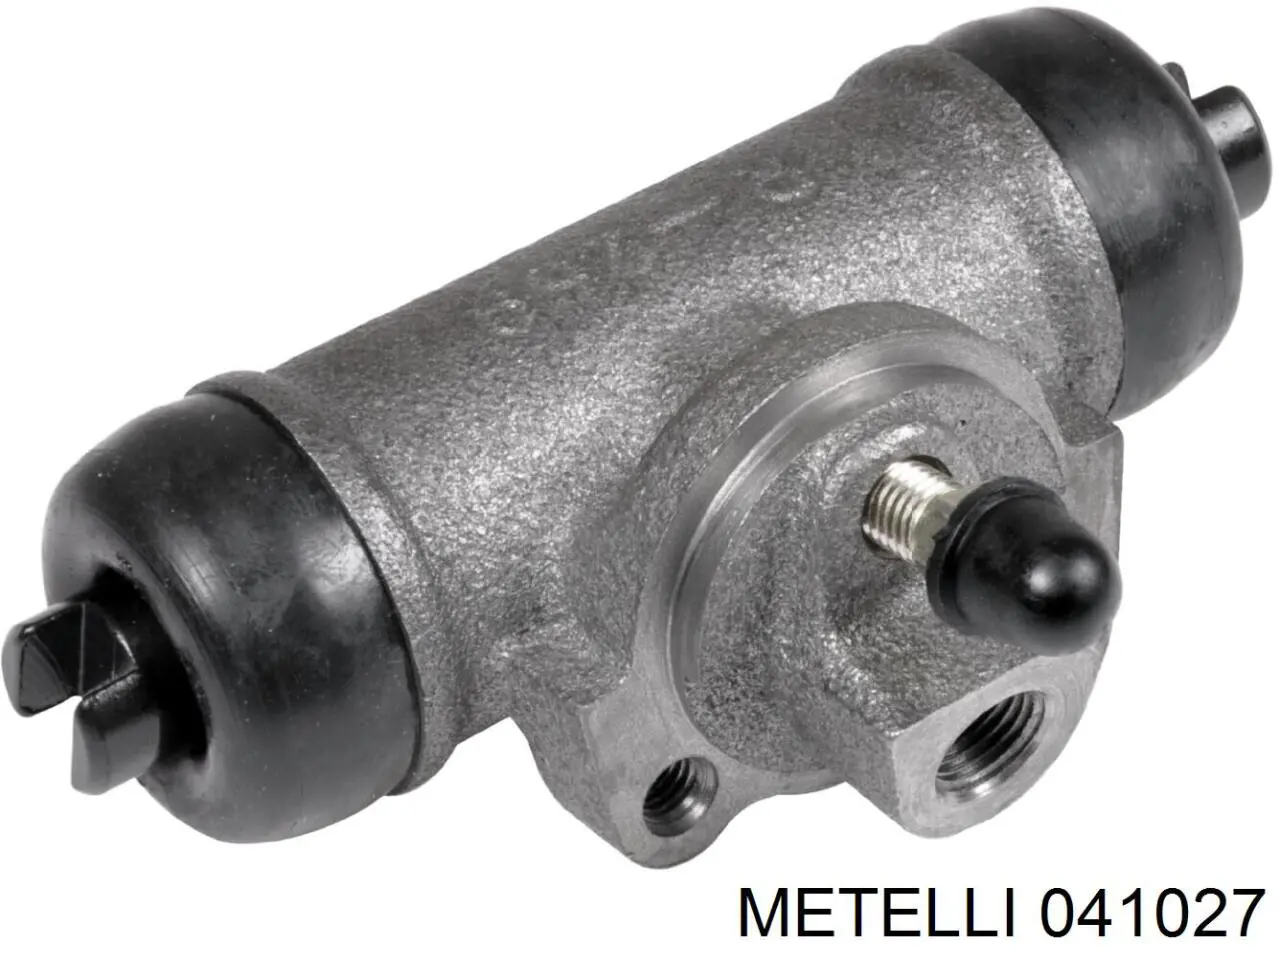 04-1027 Metelli цилиндр тормозной колесный рабочий задний